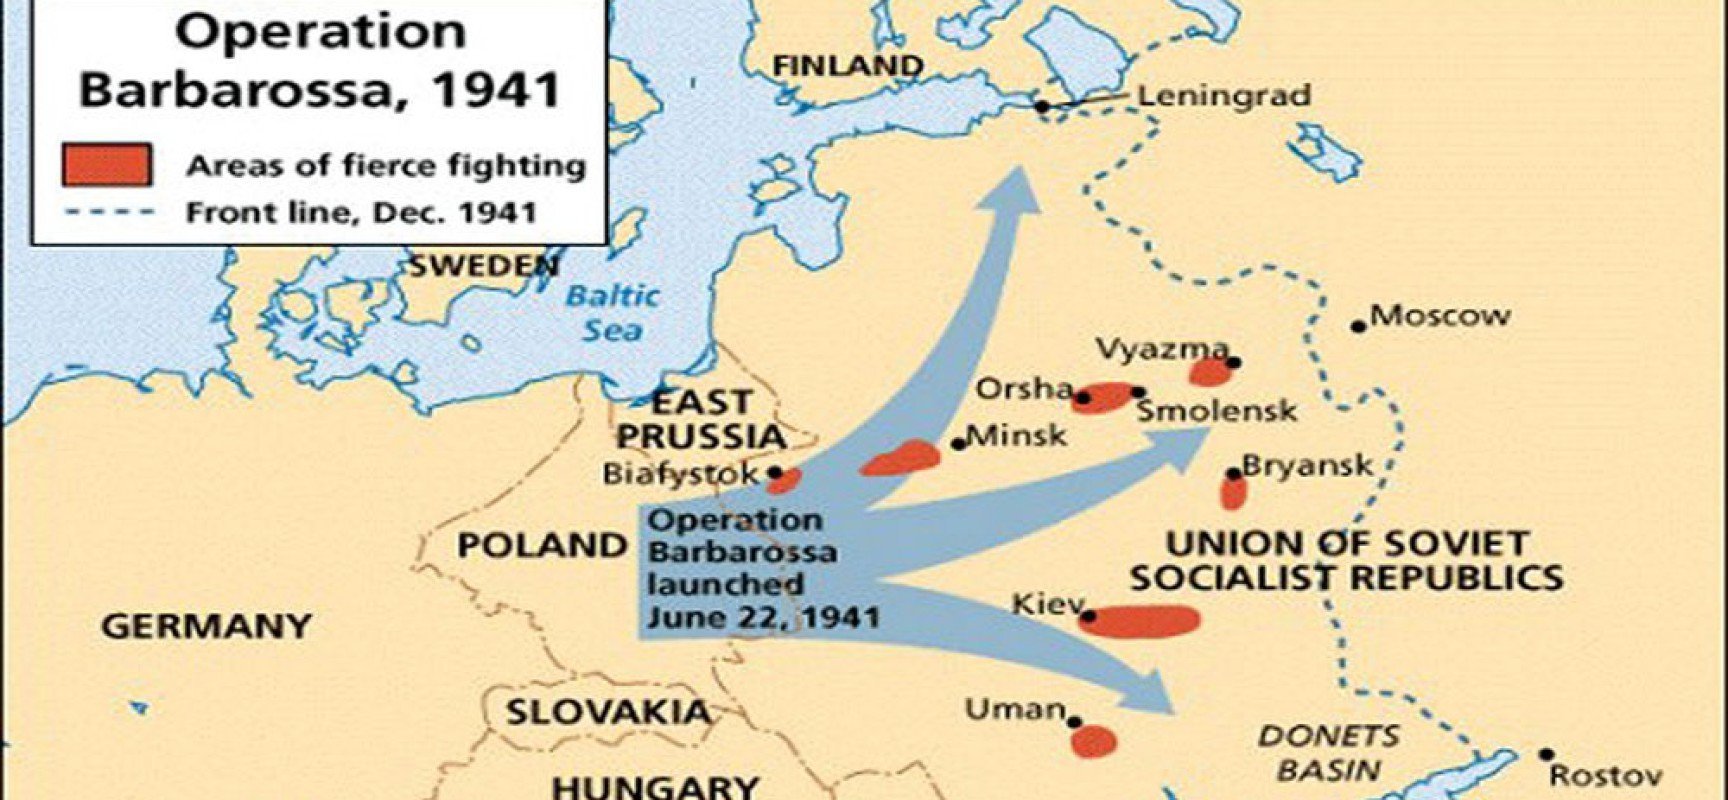 Операция барбаросса была. Карта второй мировой войны план Барбаросса. Карта плана Барбаросса 1941. Карта 2 мировой войны план Барбаросса.